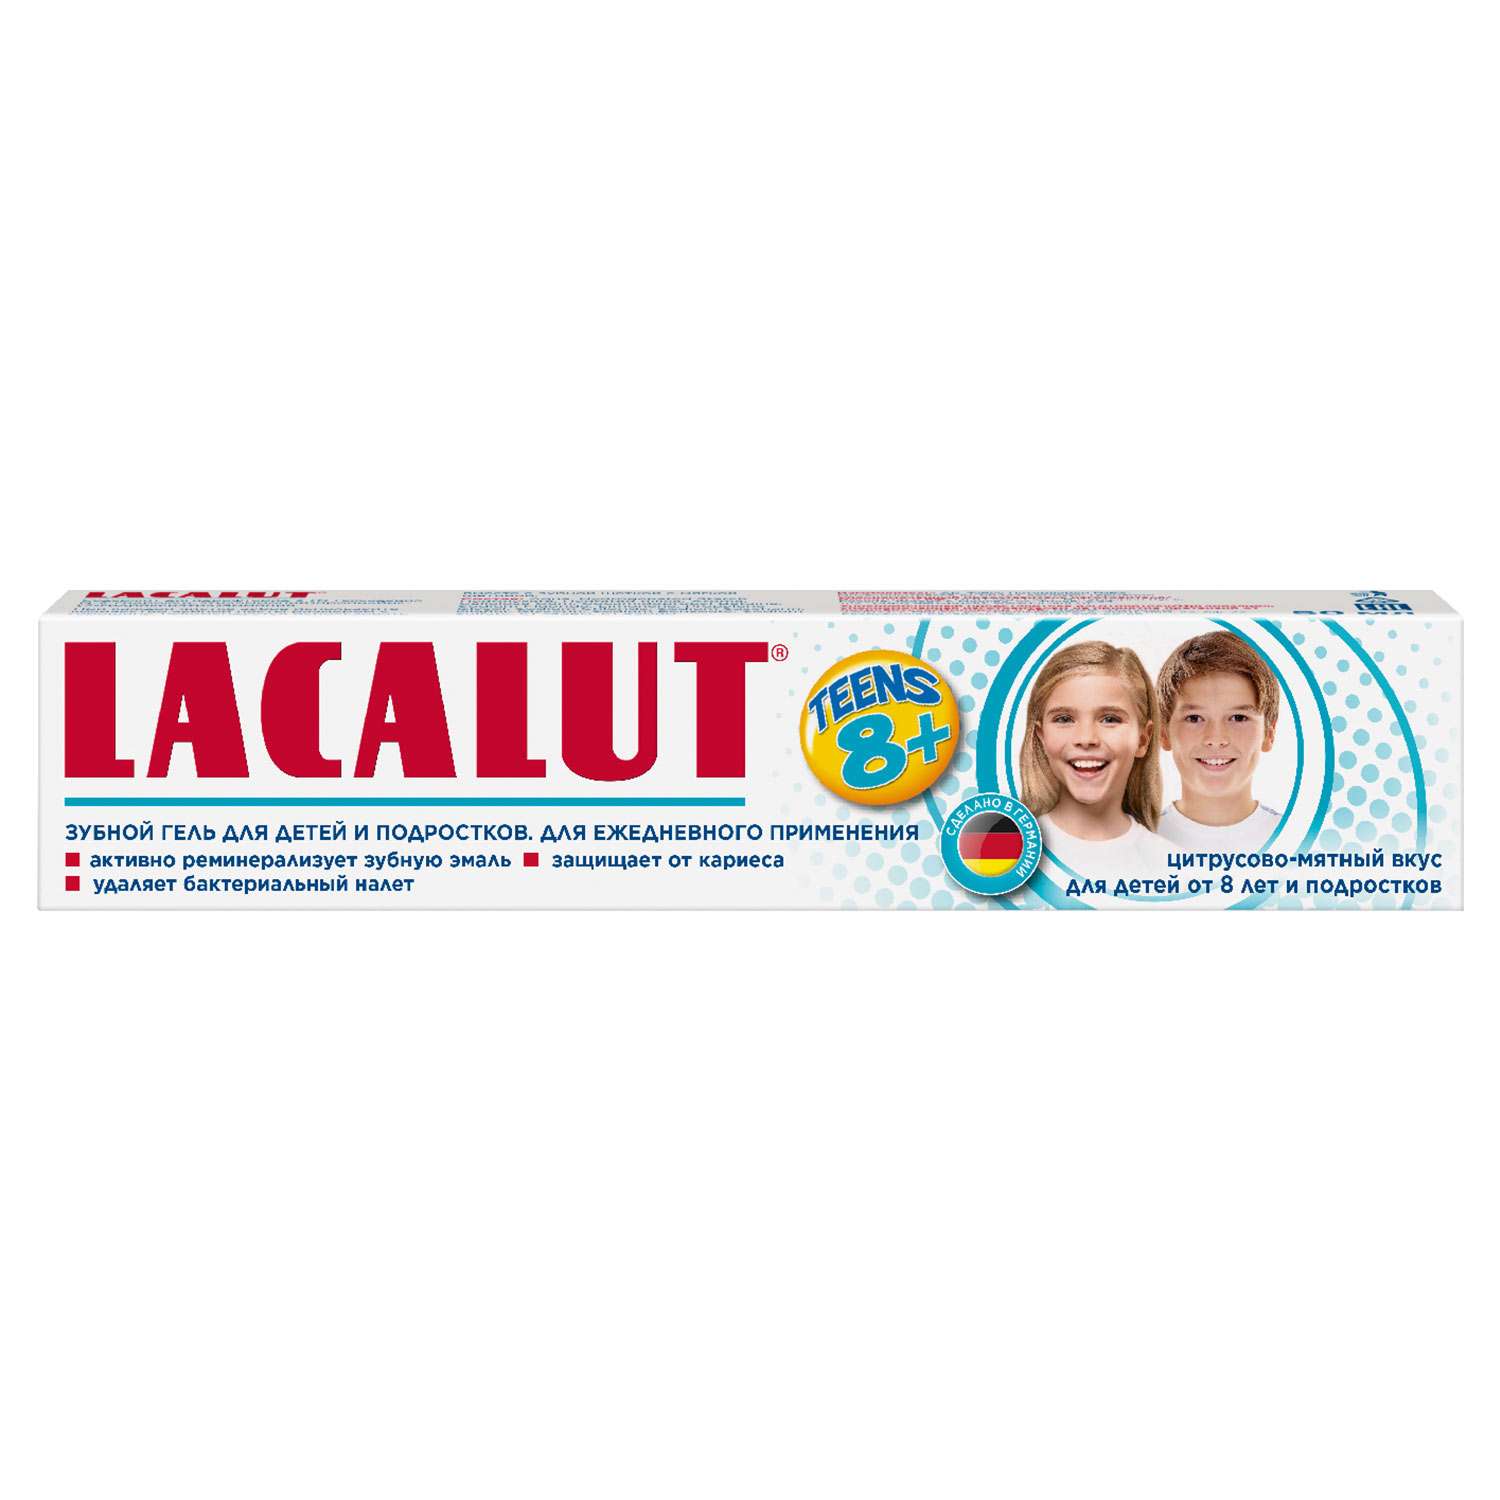 Зубной гель LACALUT Teens8+ 50мл - фото 1